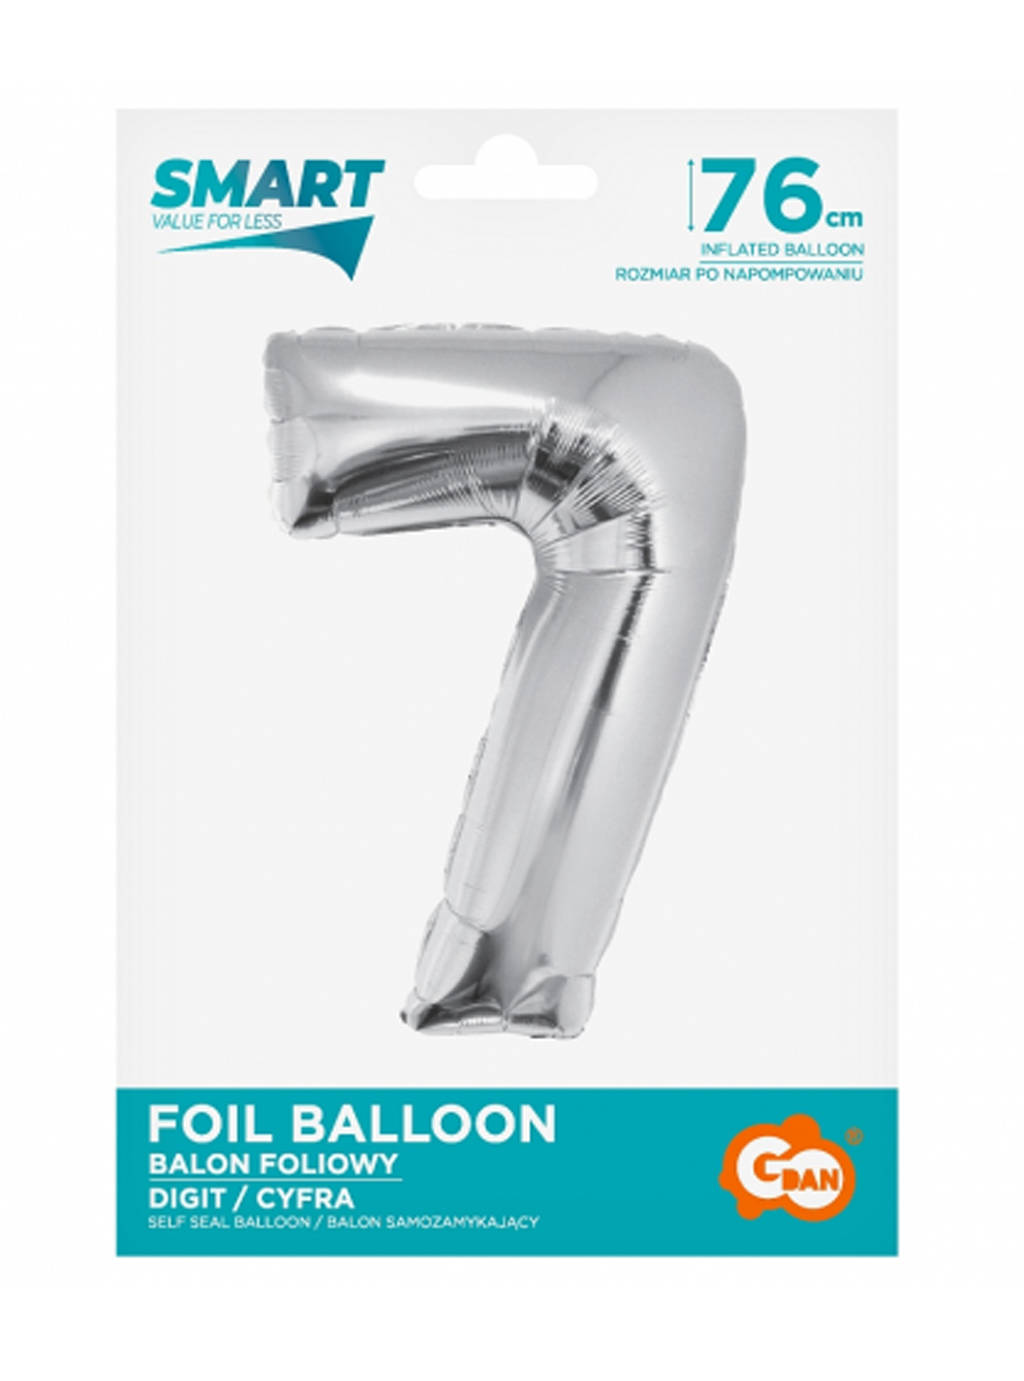 Strieborný inteligentný balón s číslom "7" -76 cm